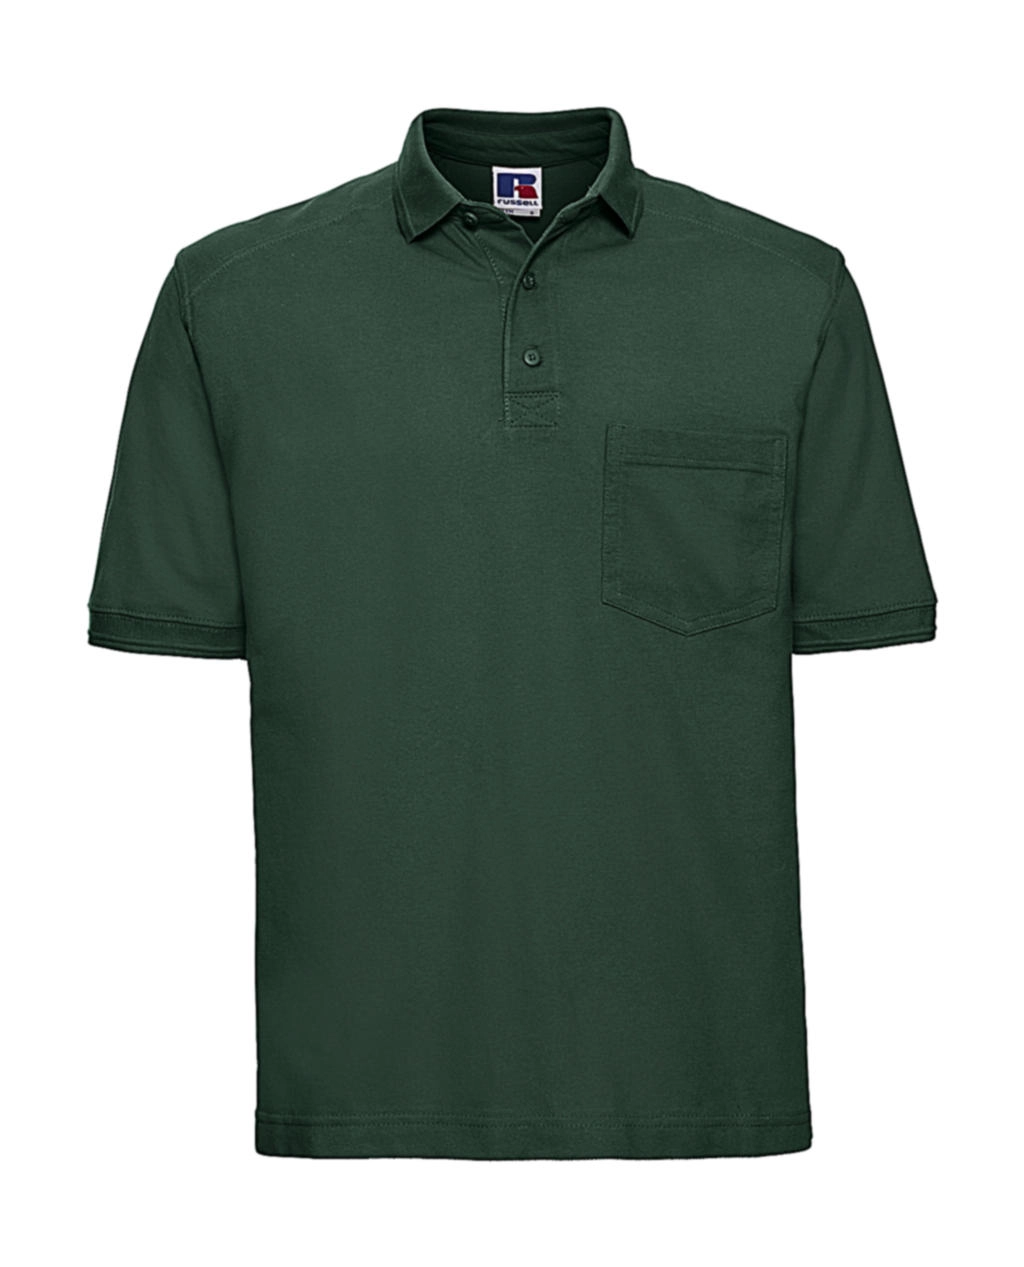 Heavy Duty Workwear Polo zum Besticken und Bedrucken in der Farbe Bottle Green mit Ihren Logo, Schriftzug oder Motiv.